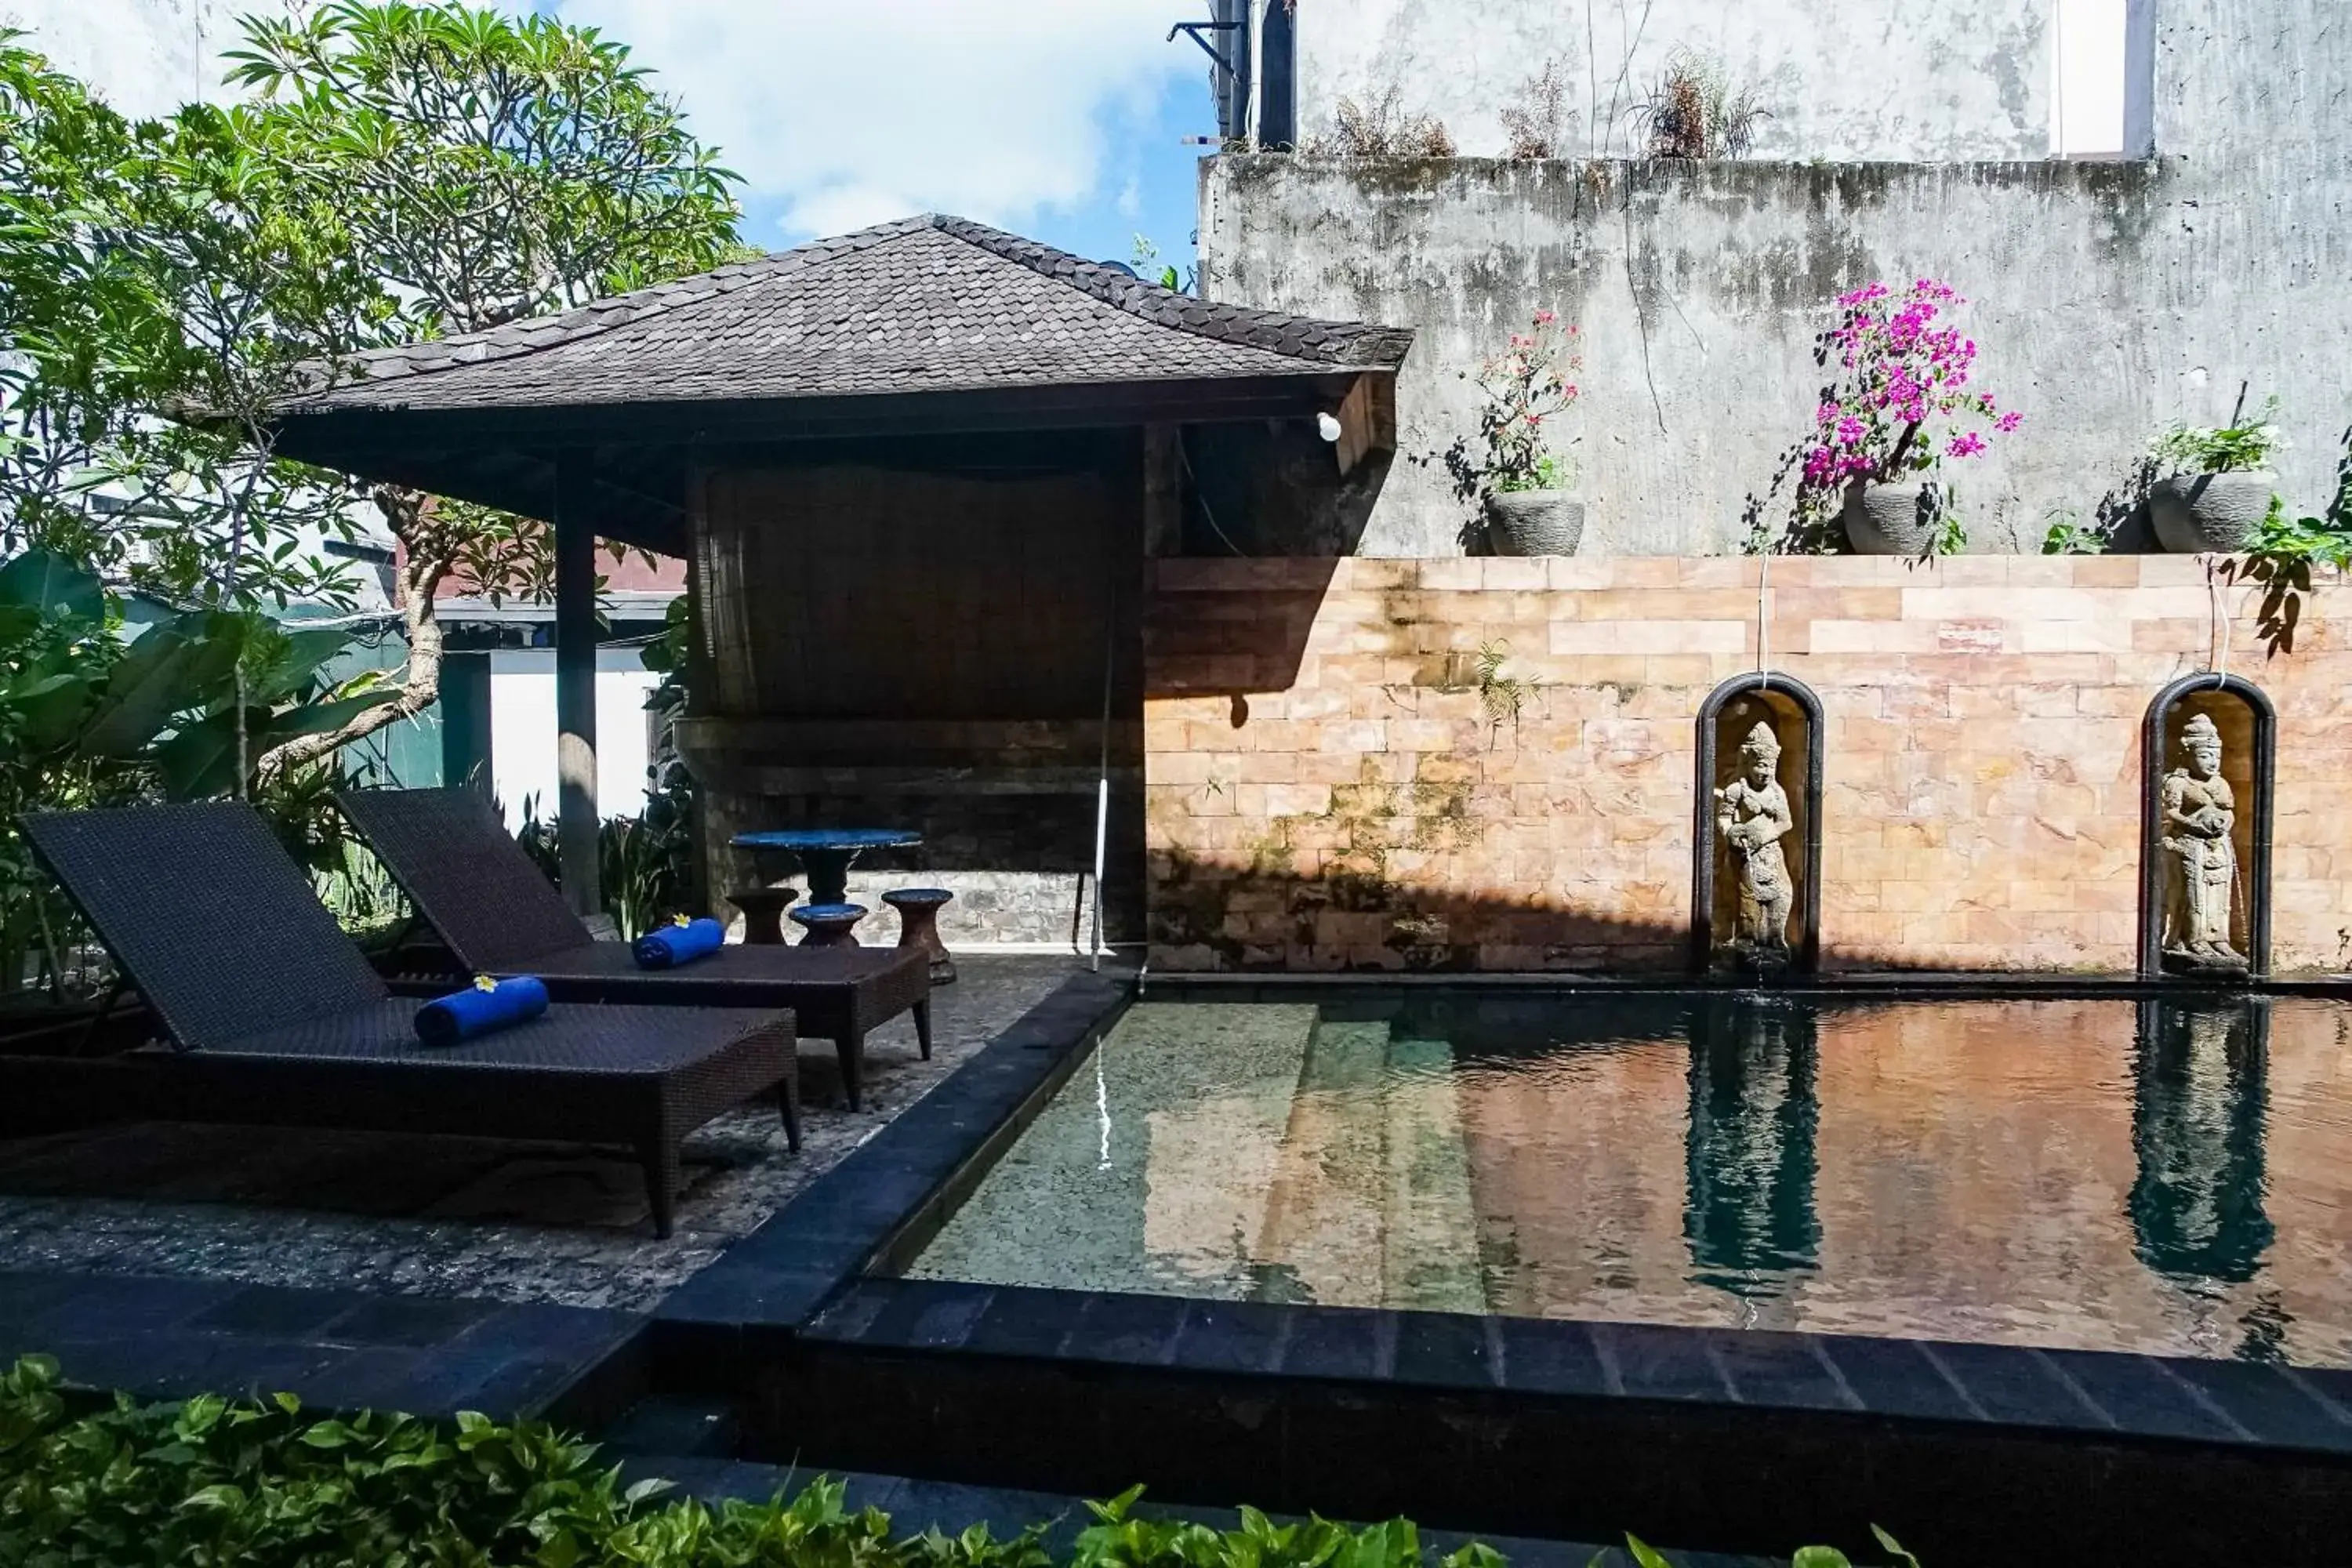 Property building, Swimming Pool in Taman Ayu Legian